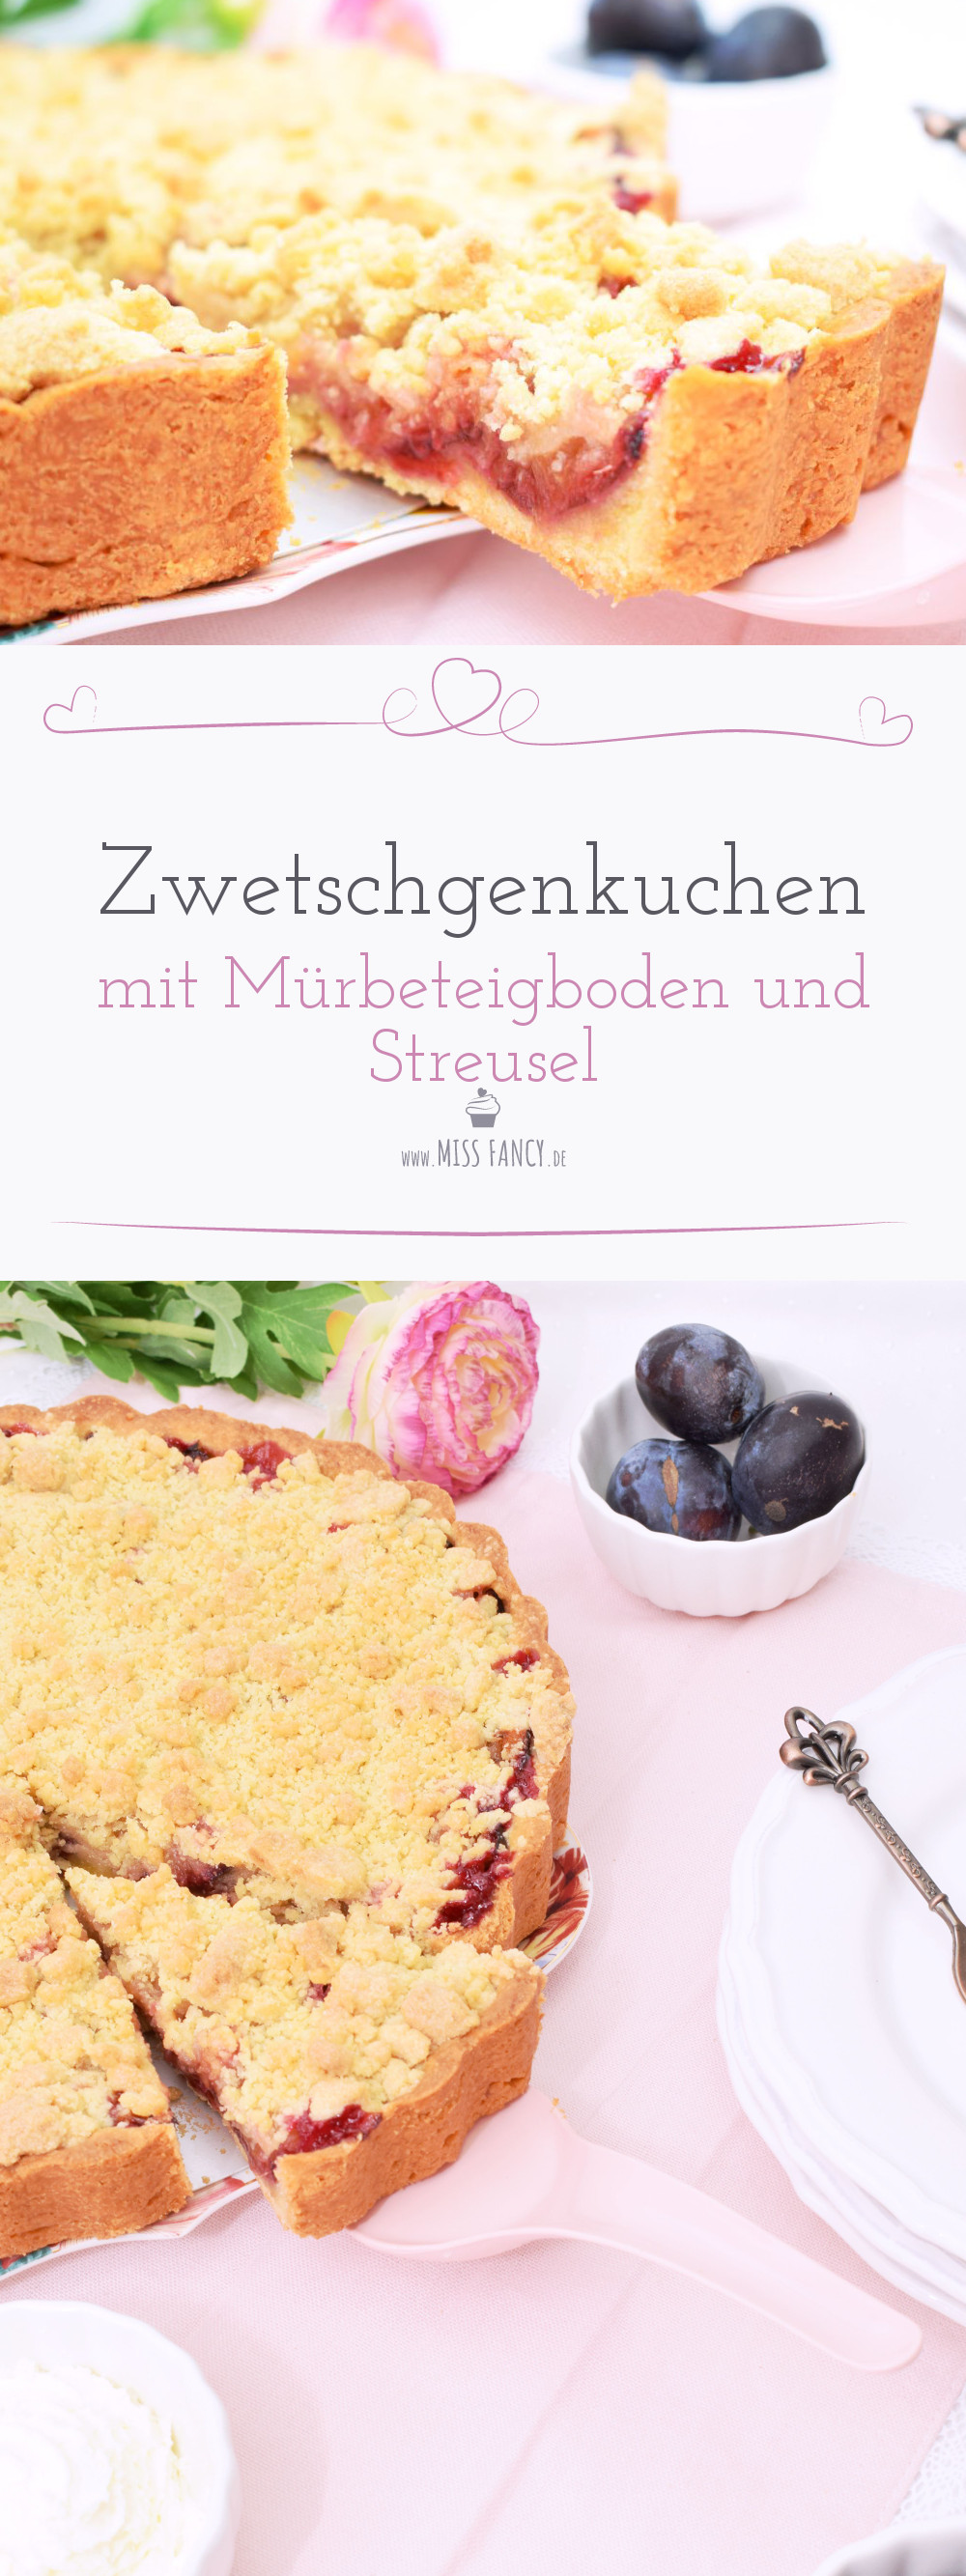 Rezept Zwetschgenkuchen mit Mürbeteigboden und Streusel Missfancy Foodblog1.